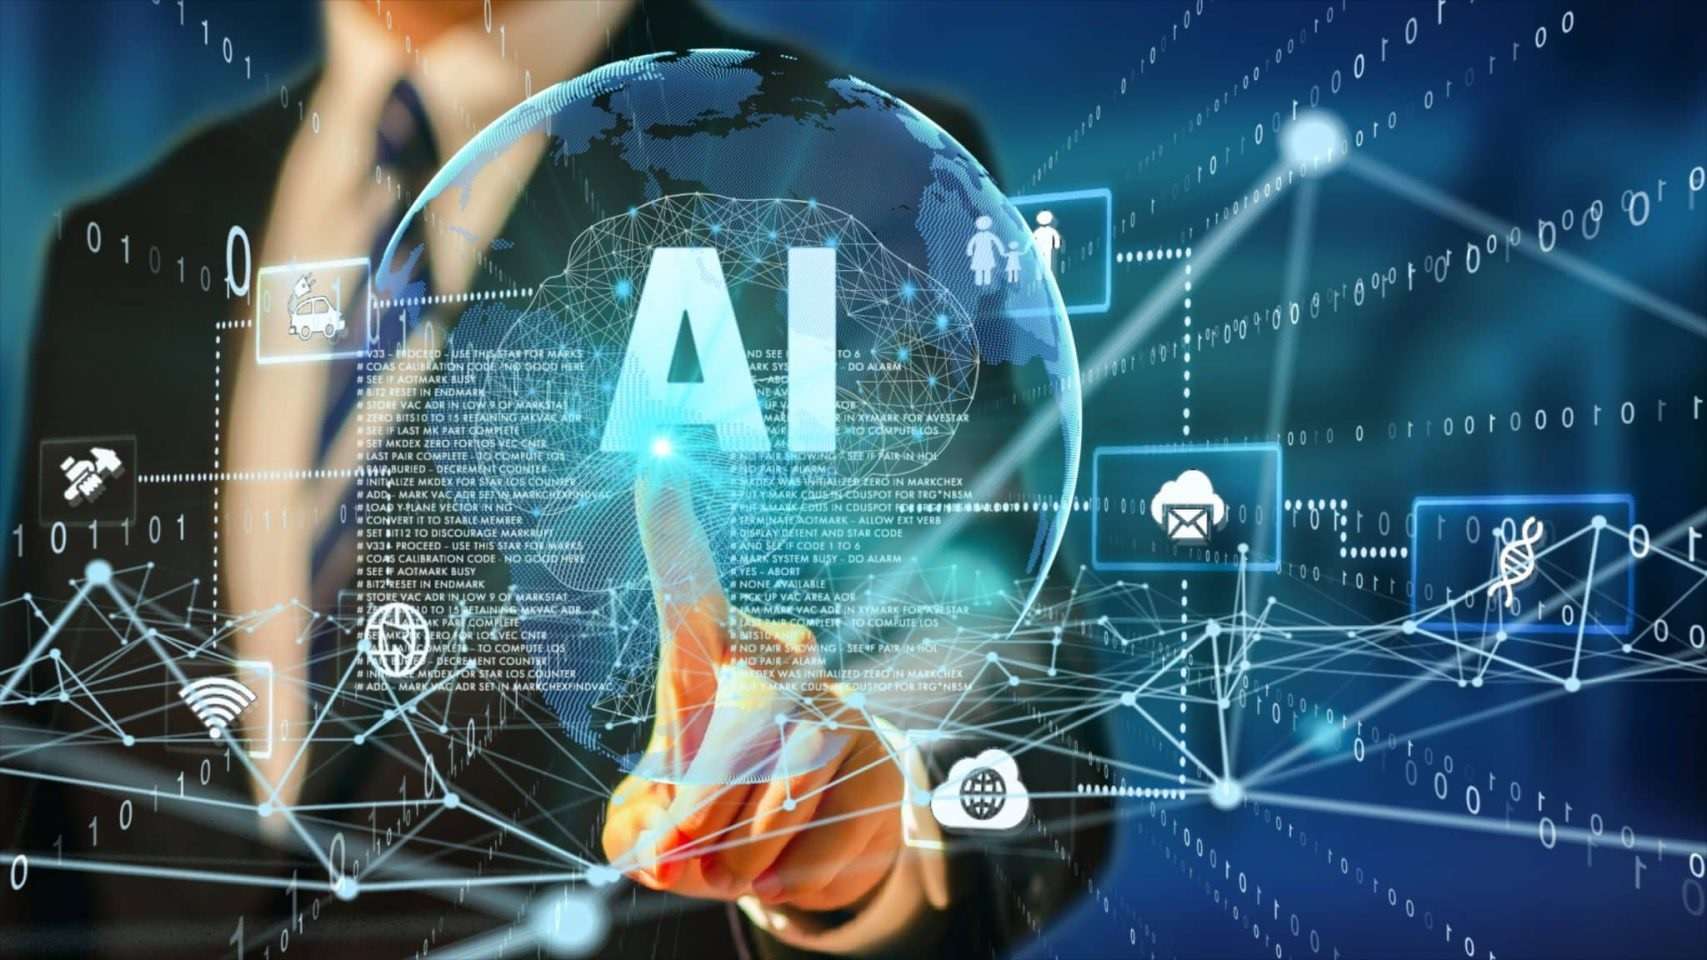 Des chercheurs du FMI mettent en garde contre les effets de l’intelligence artificielle sur l’emploi